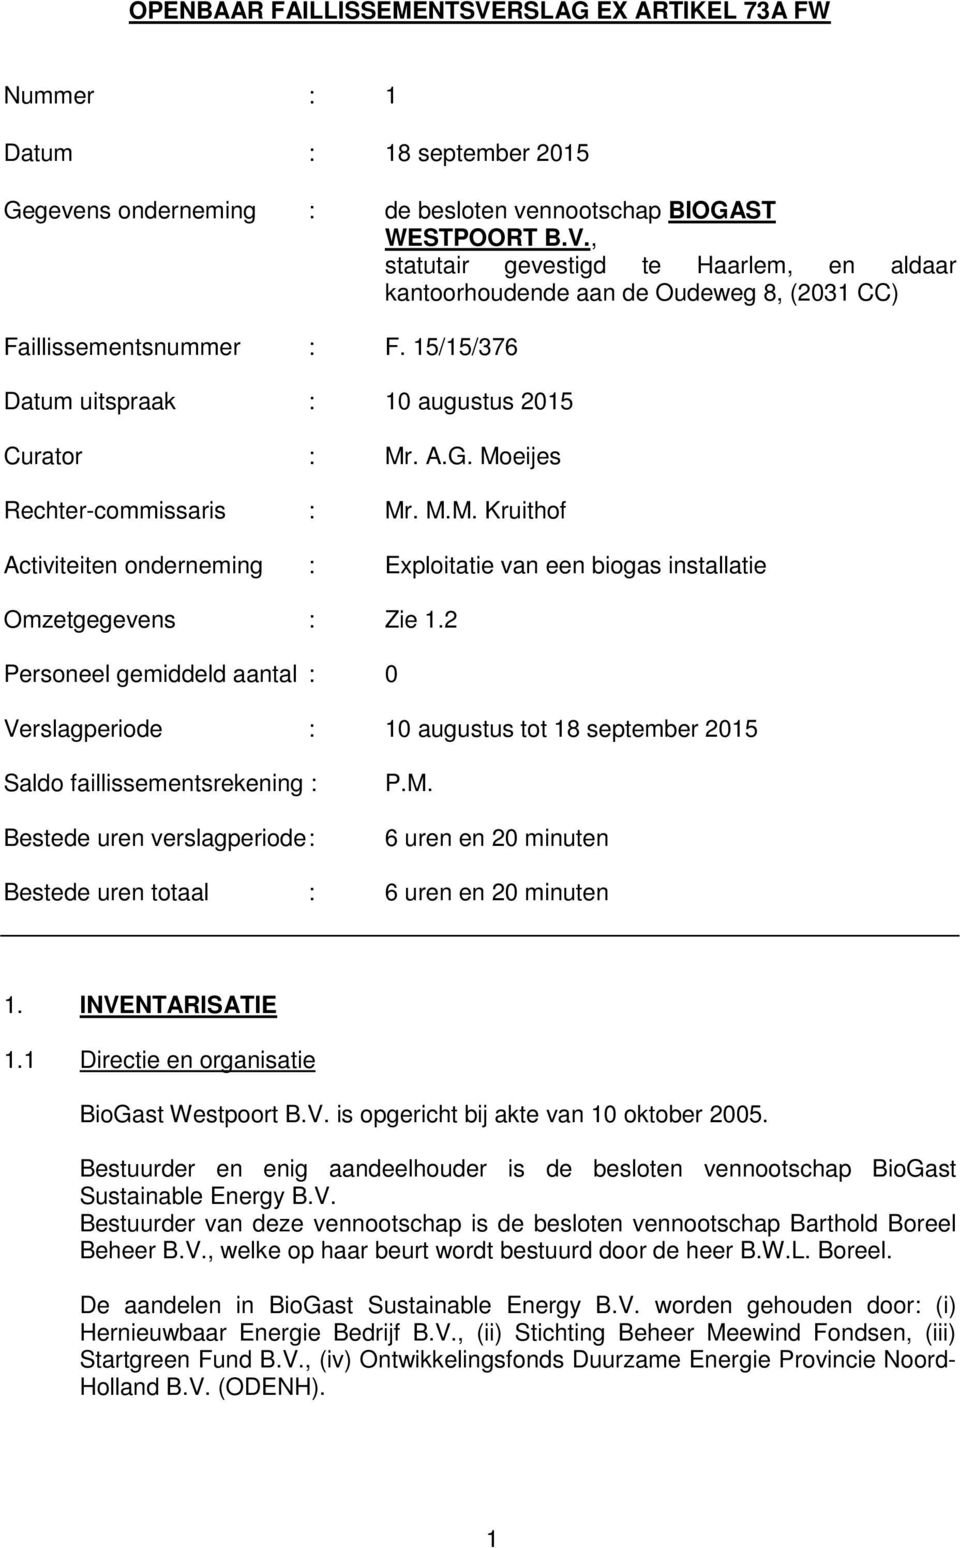 2 Personeel gemiddeld aantal : 0 Verslagperiode : 10 augustus tot 18 september 2015 Saldo faillissementsrekening : Bestede uren verslagperiode : P.M.